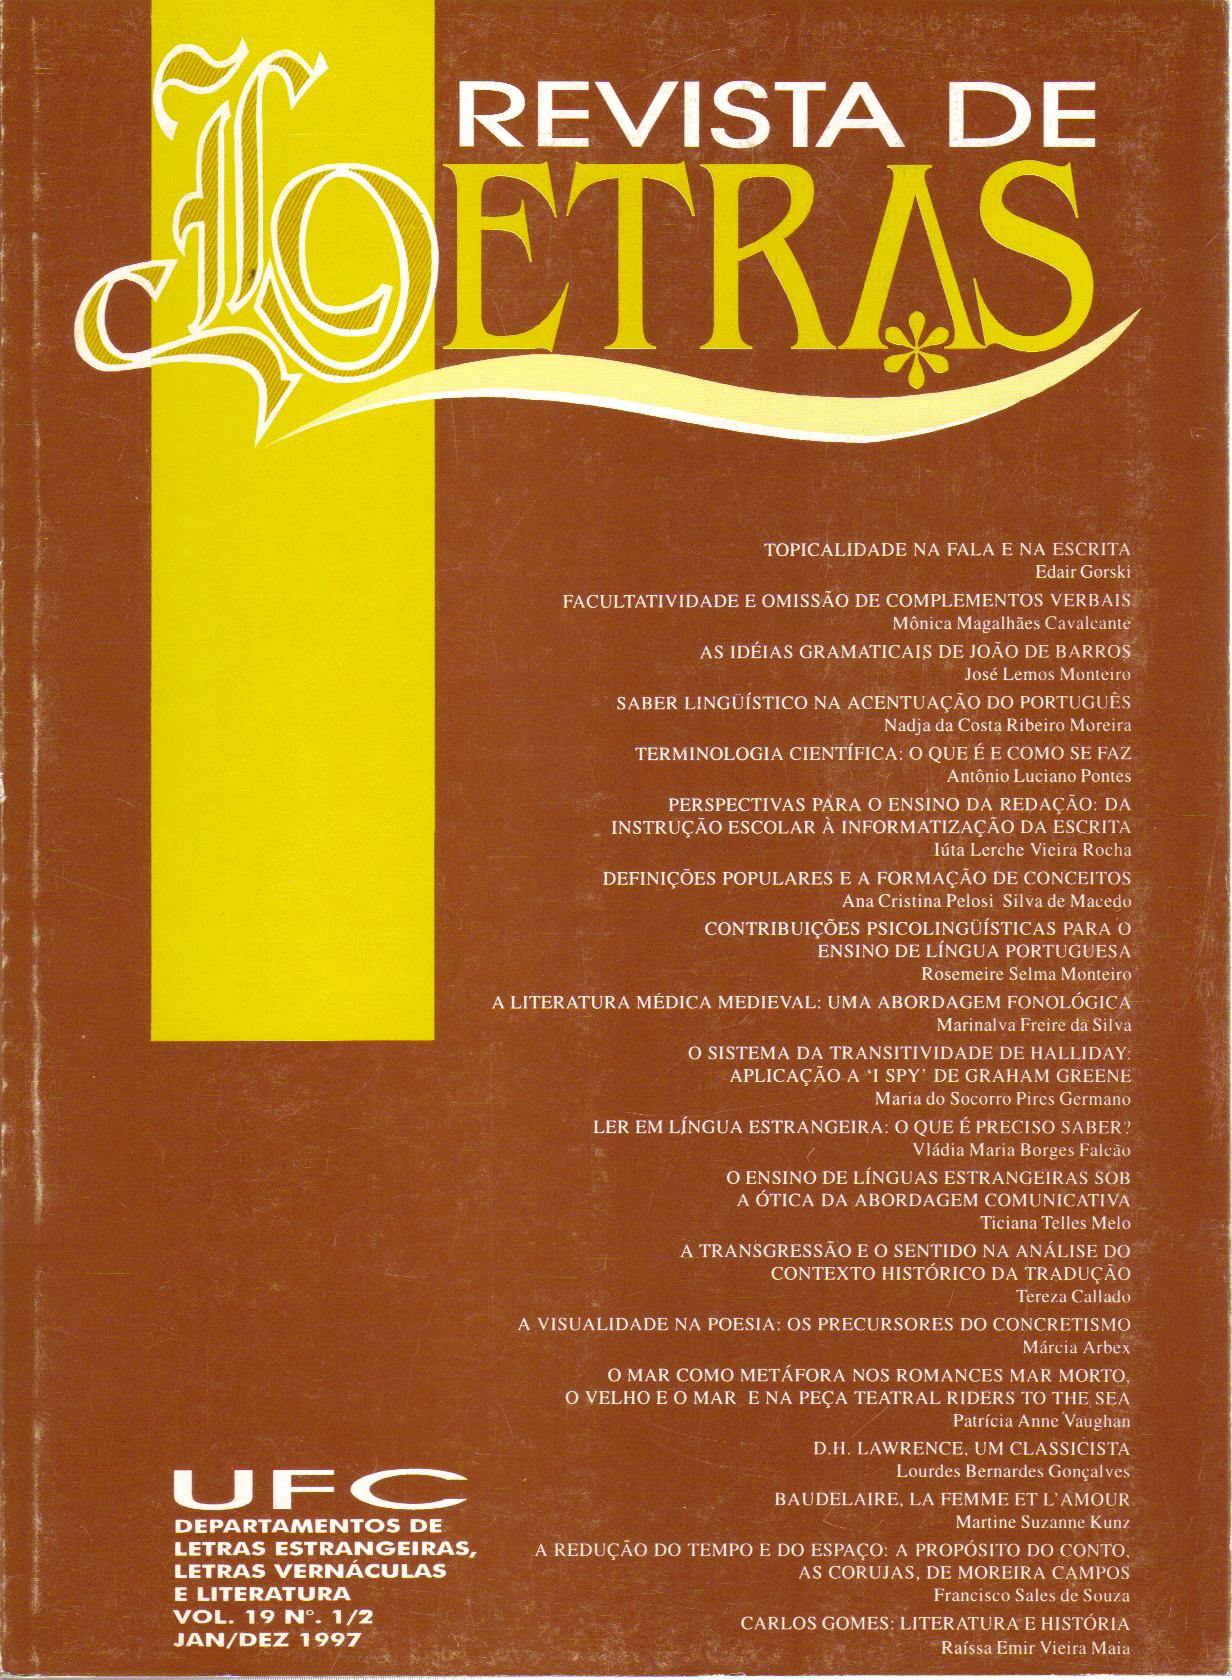 					Visualizar v. 1 n. 16 (1994): REVISTA DE LETRAS V. 1/2, N. 16 (1994)
				